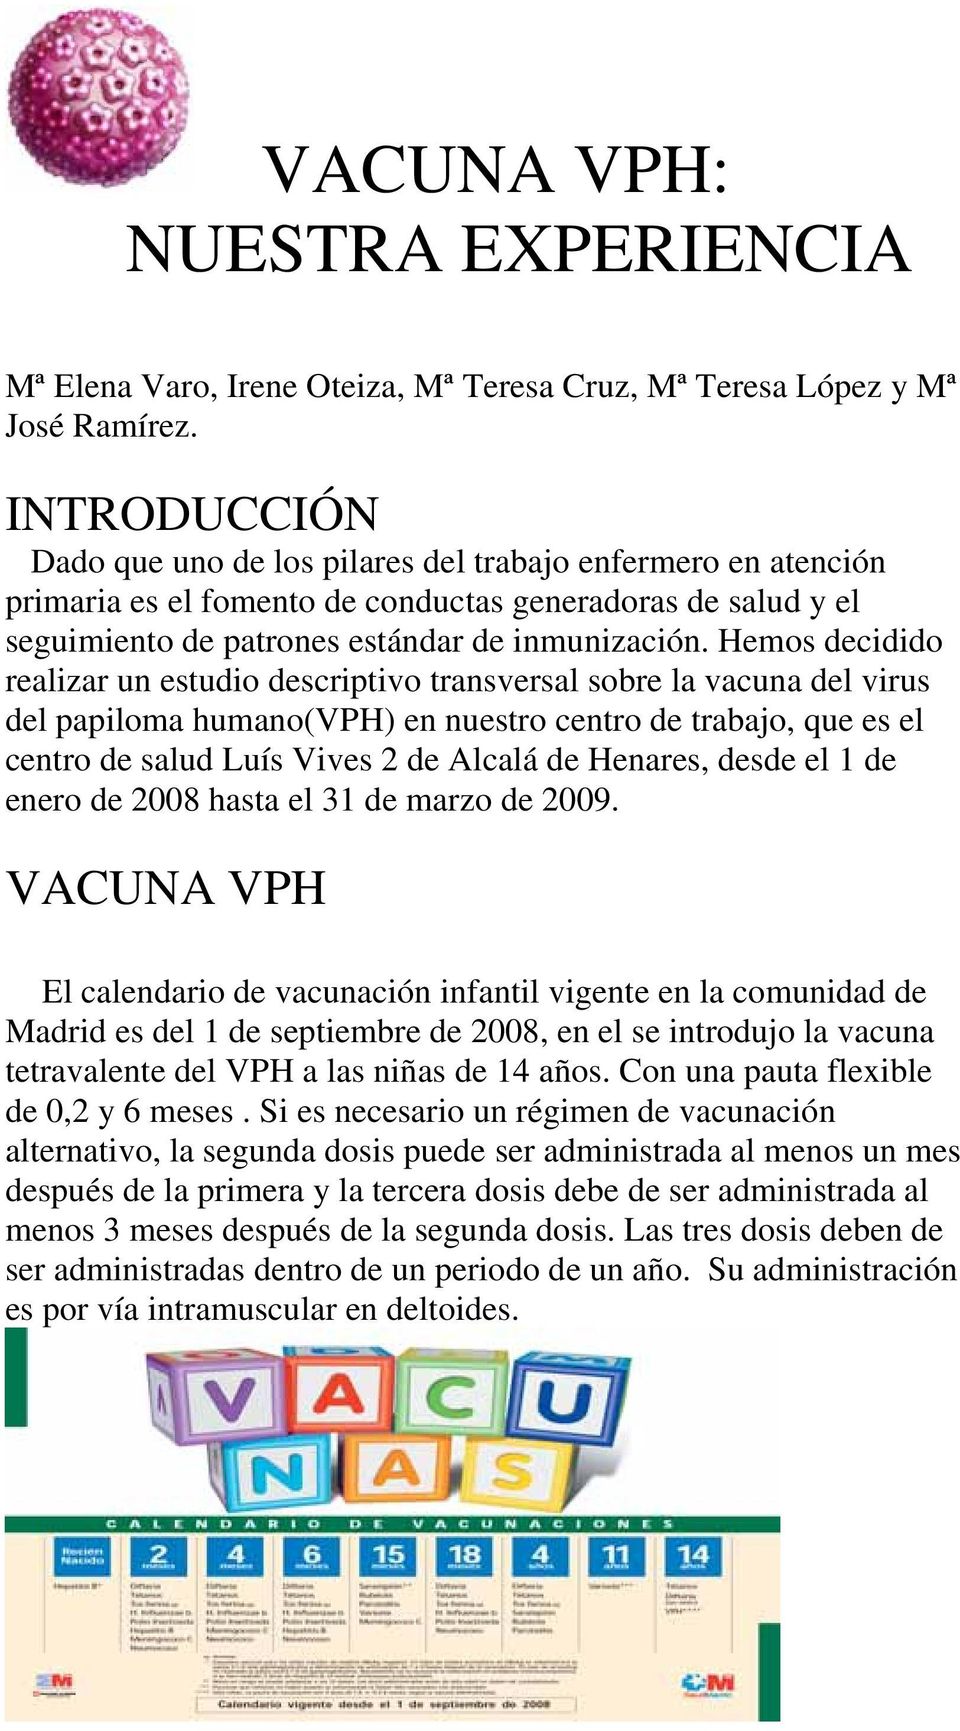 Hemos decidido realizar un estudio descriptivo transversal sobre la vacuna del virus del papiloma humano(vph) en nuestro centro de trabajo, que es el centro de salud Luís Vives 2 de Alcalá de